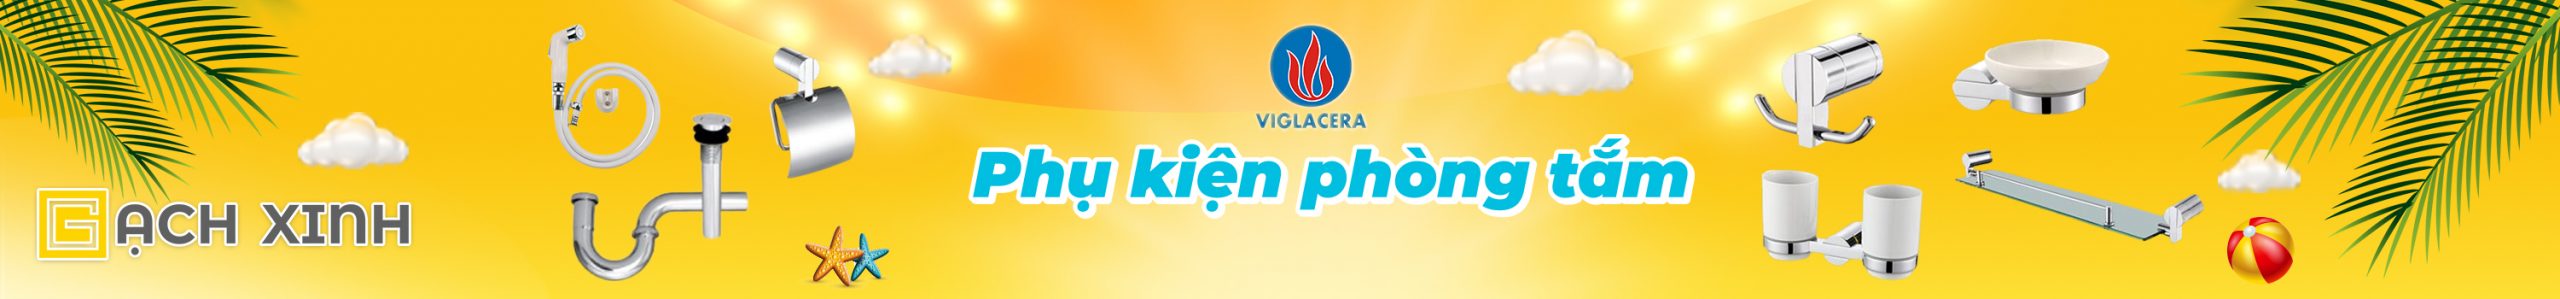 Banner Phụ Kiện Phòng Tắm Viglacera main